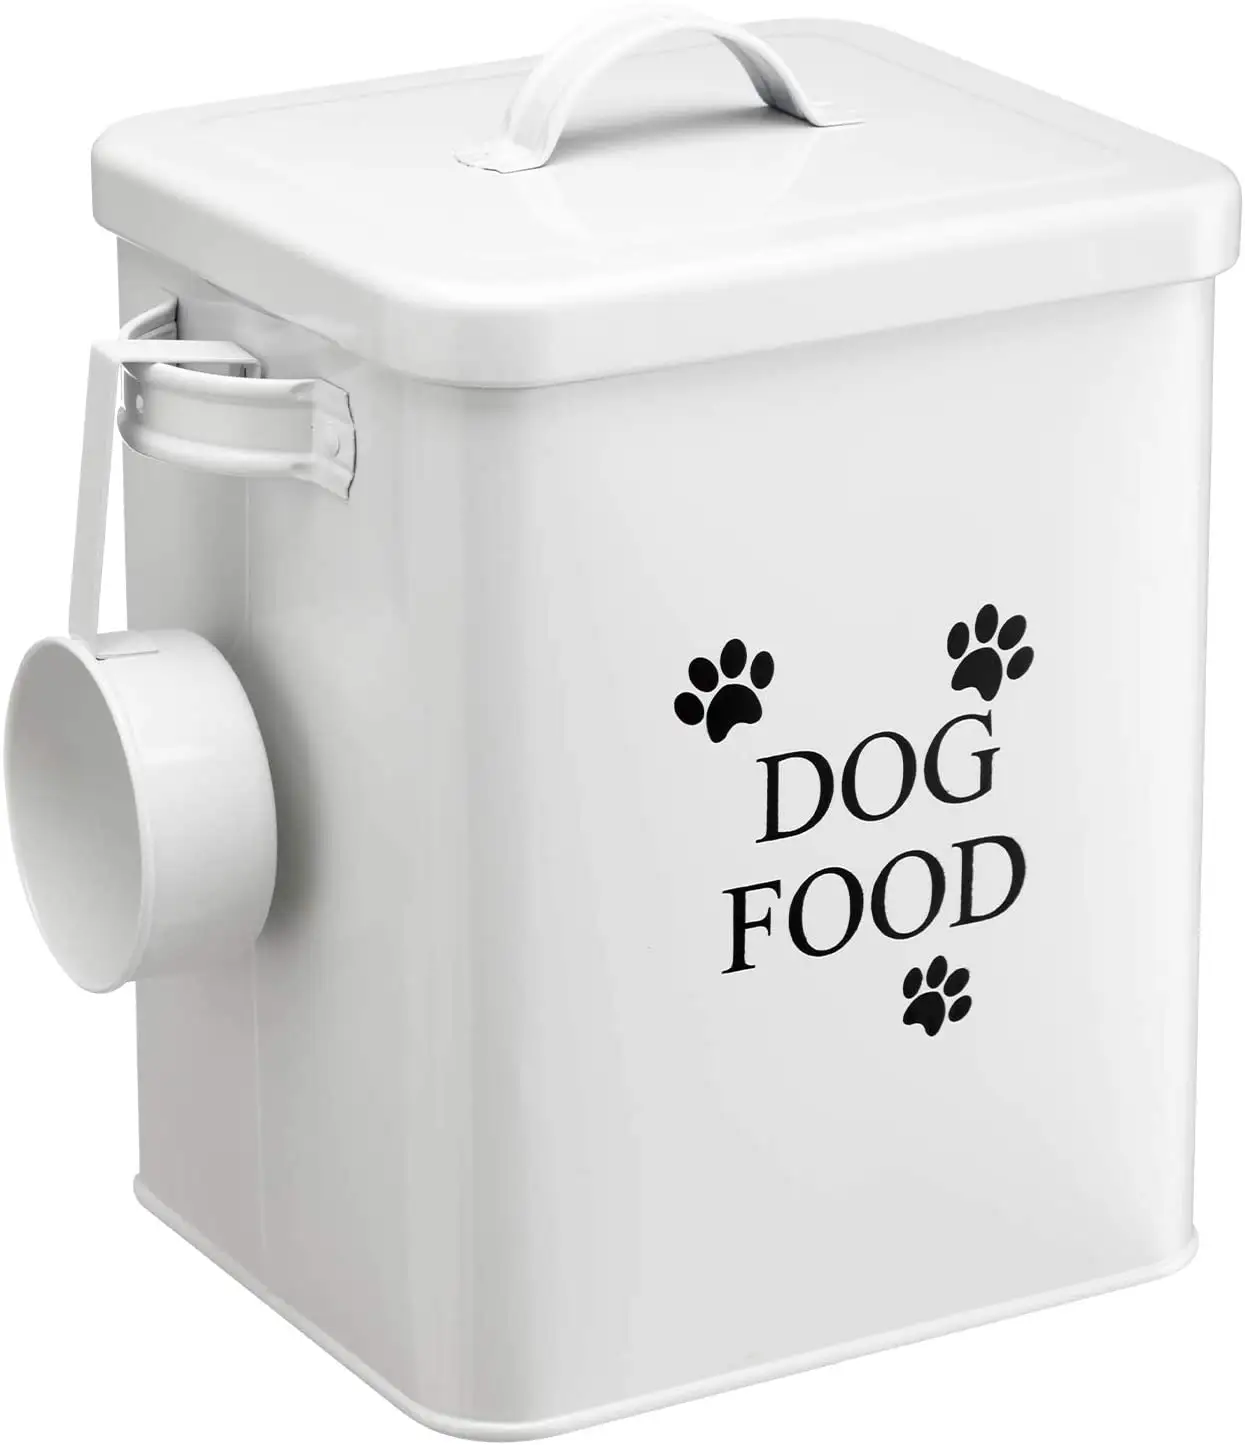 กล่องโลหะเก็บอาหารสุนัขสัตว์เลี้ยงขนาดใหญ่,กล่องโลหะขายส่งกล่องเก็บอาหารสุนัขสัตว์เลี้ยง